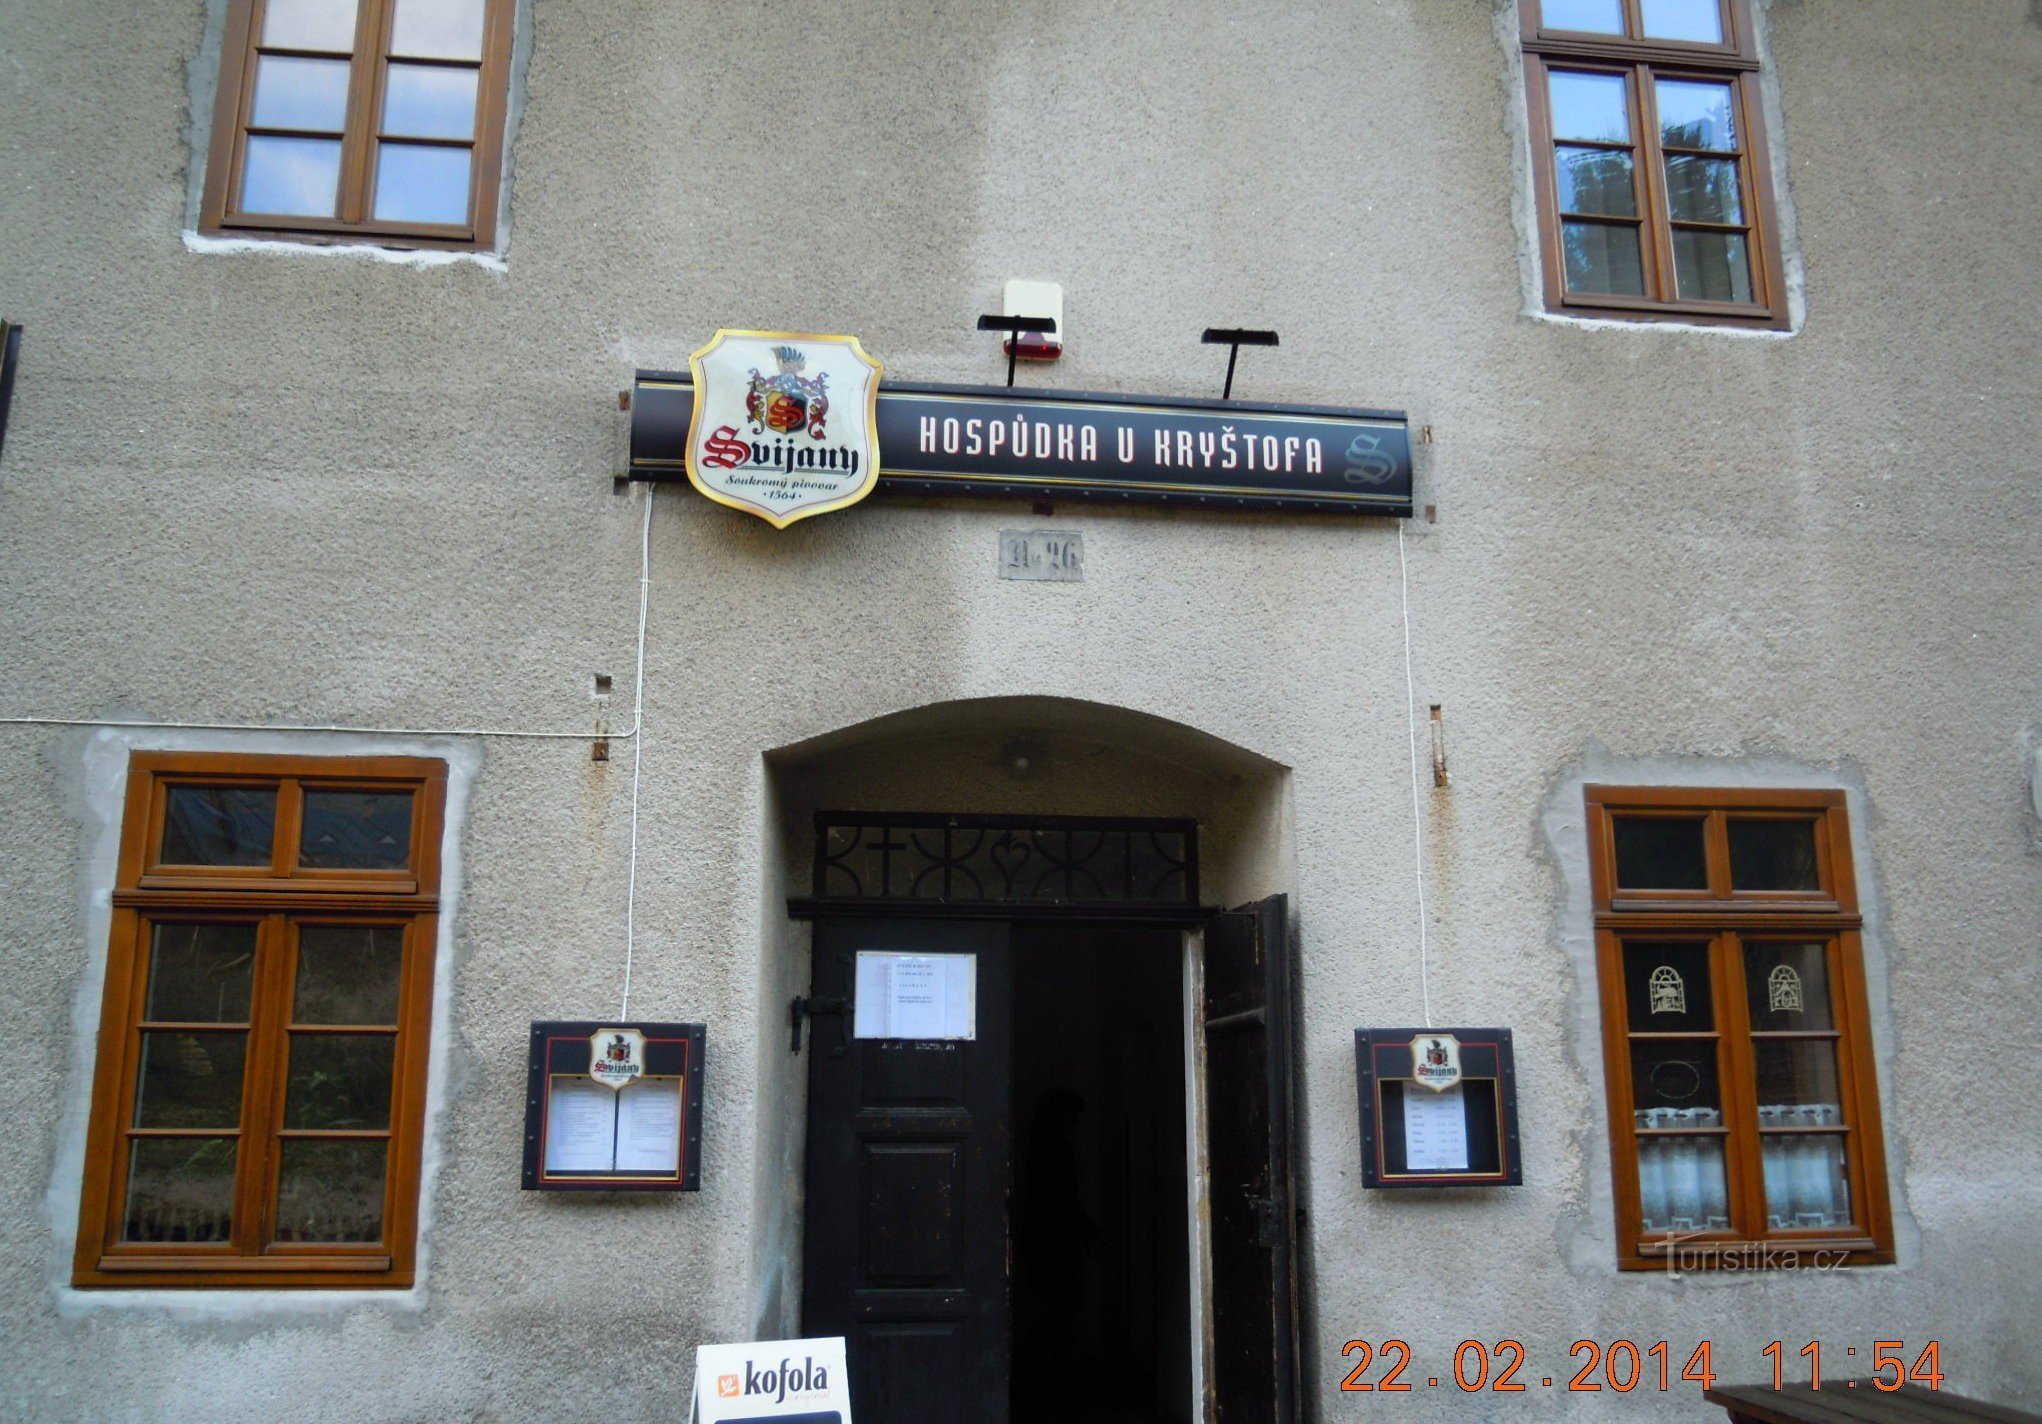 quán rượu ở Kryštofova údolí năm 2014